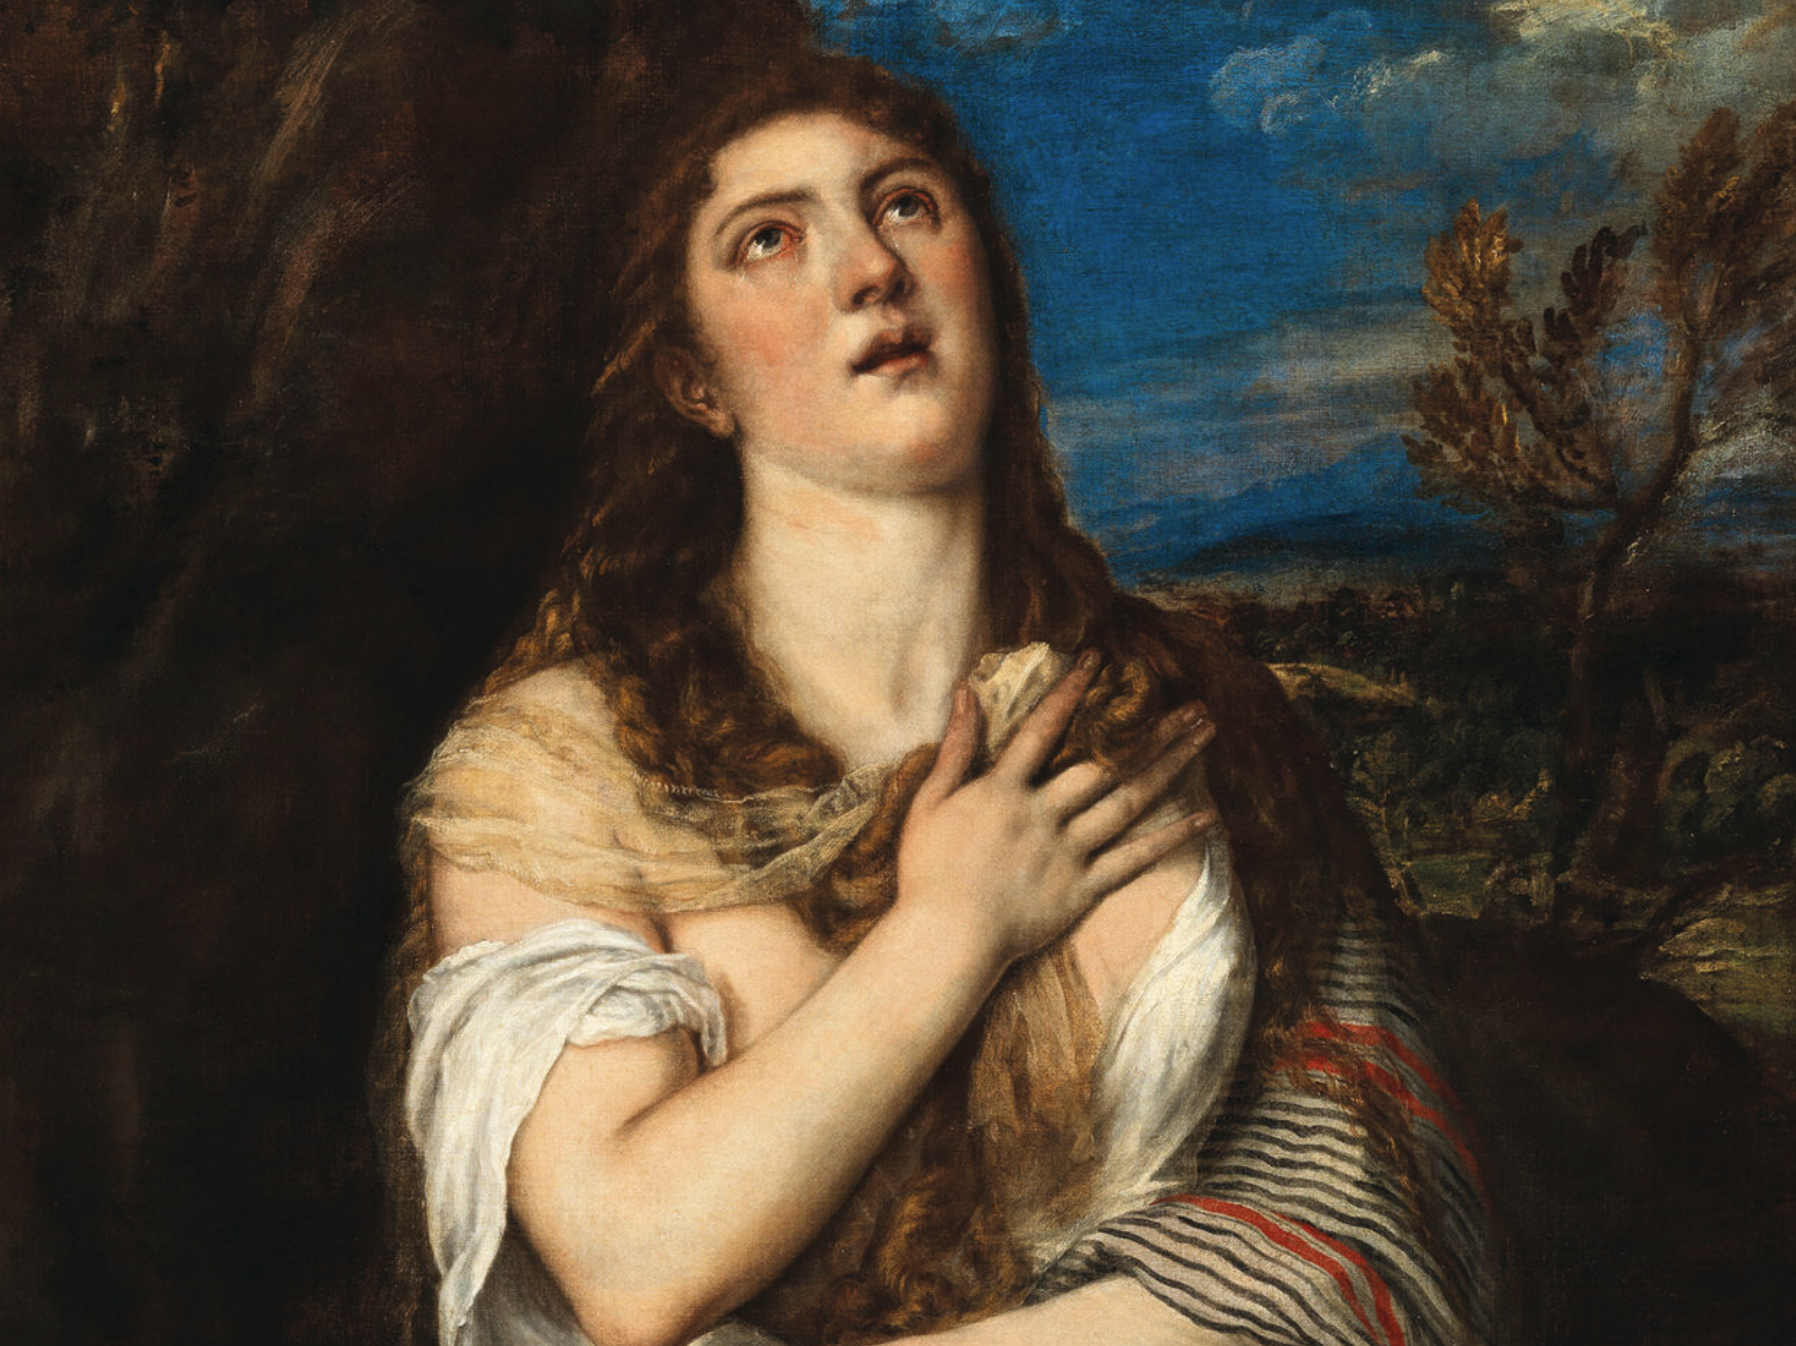 La Maddalena di Tiziano da 4,8 milioni guida il semestre di Dorotheum